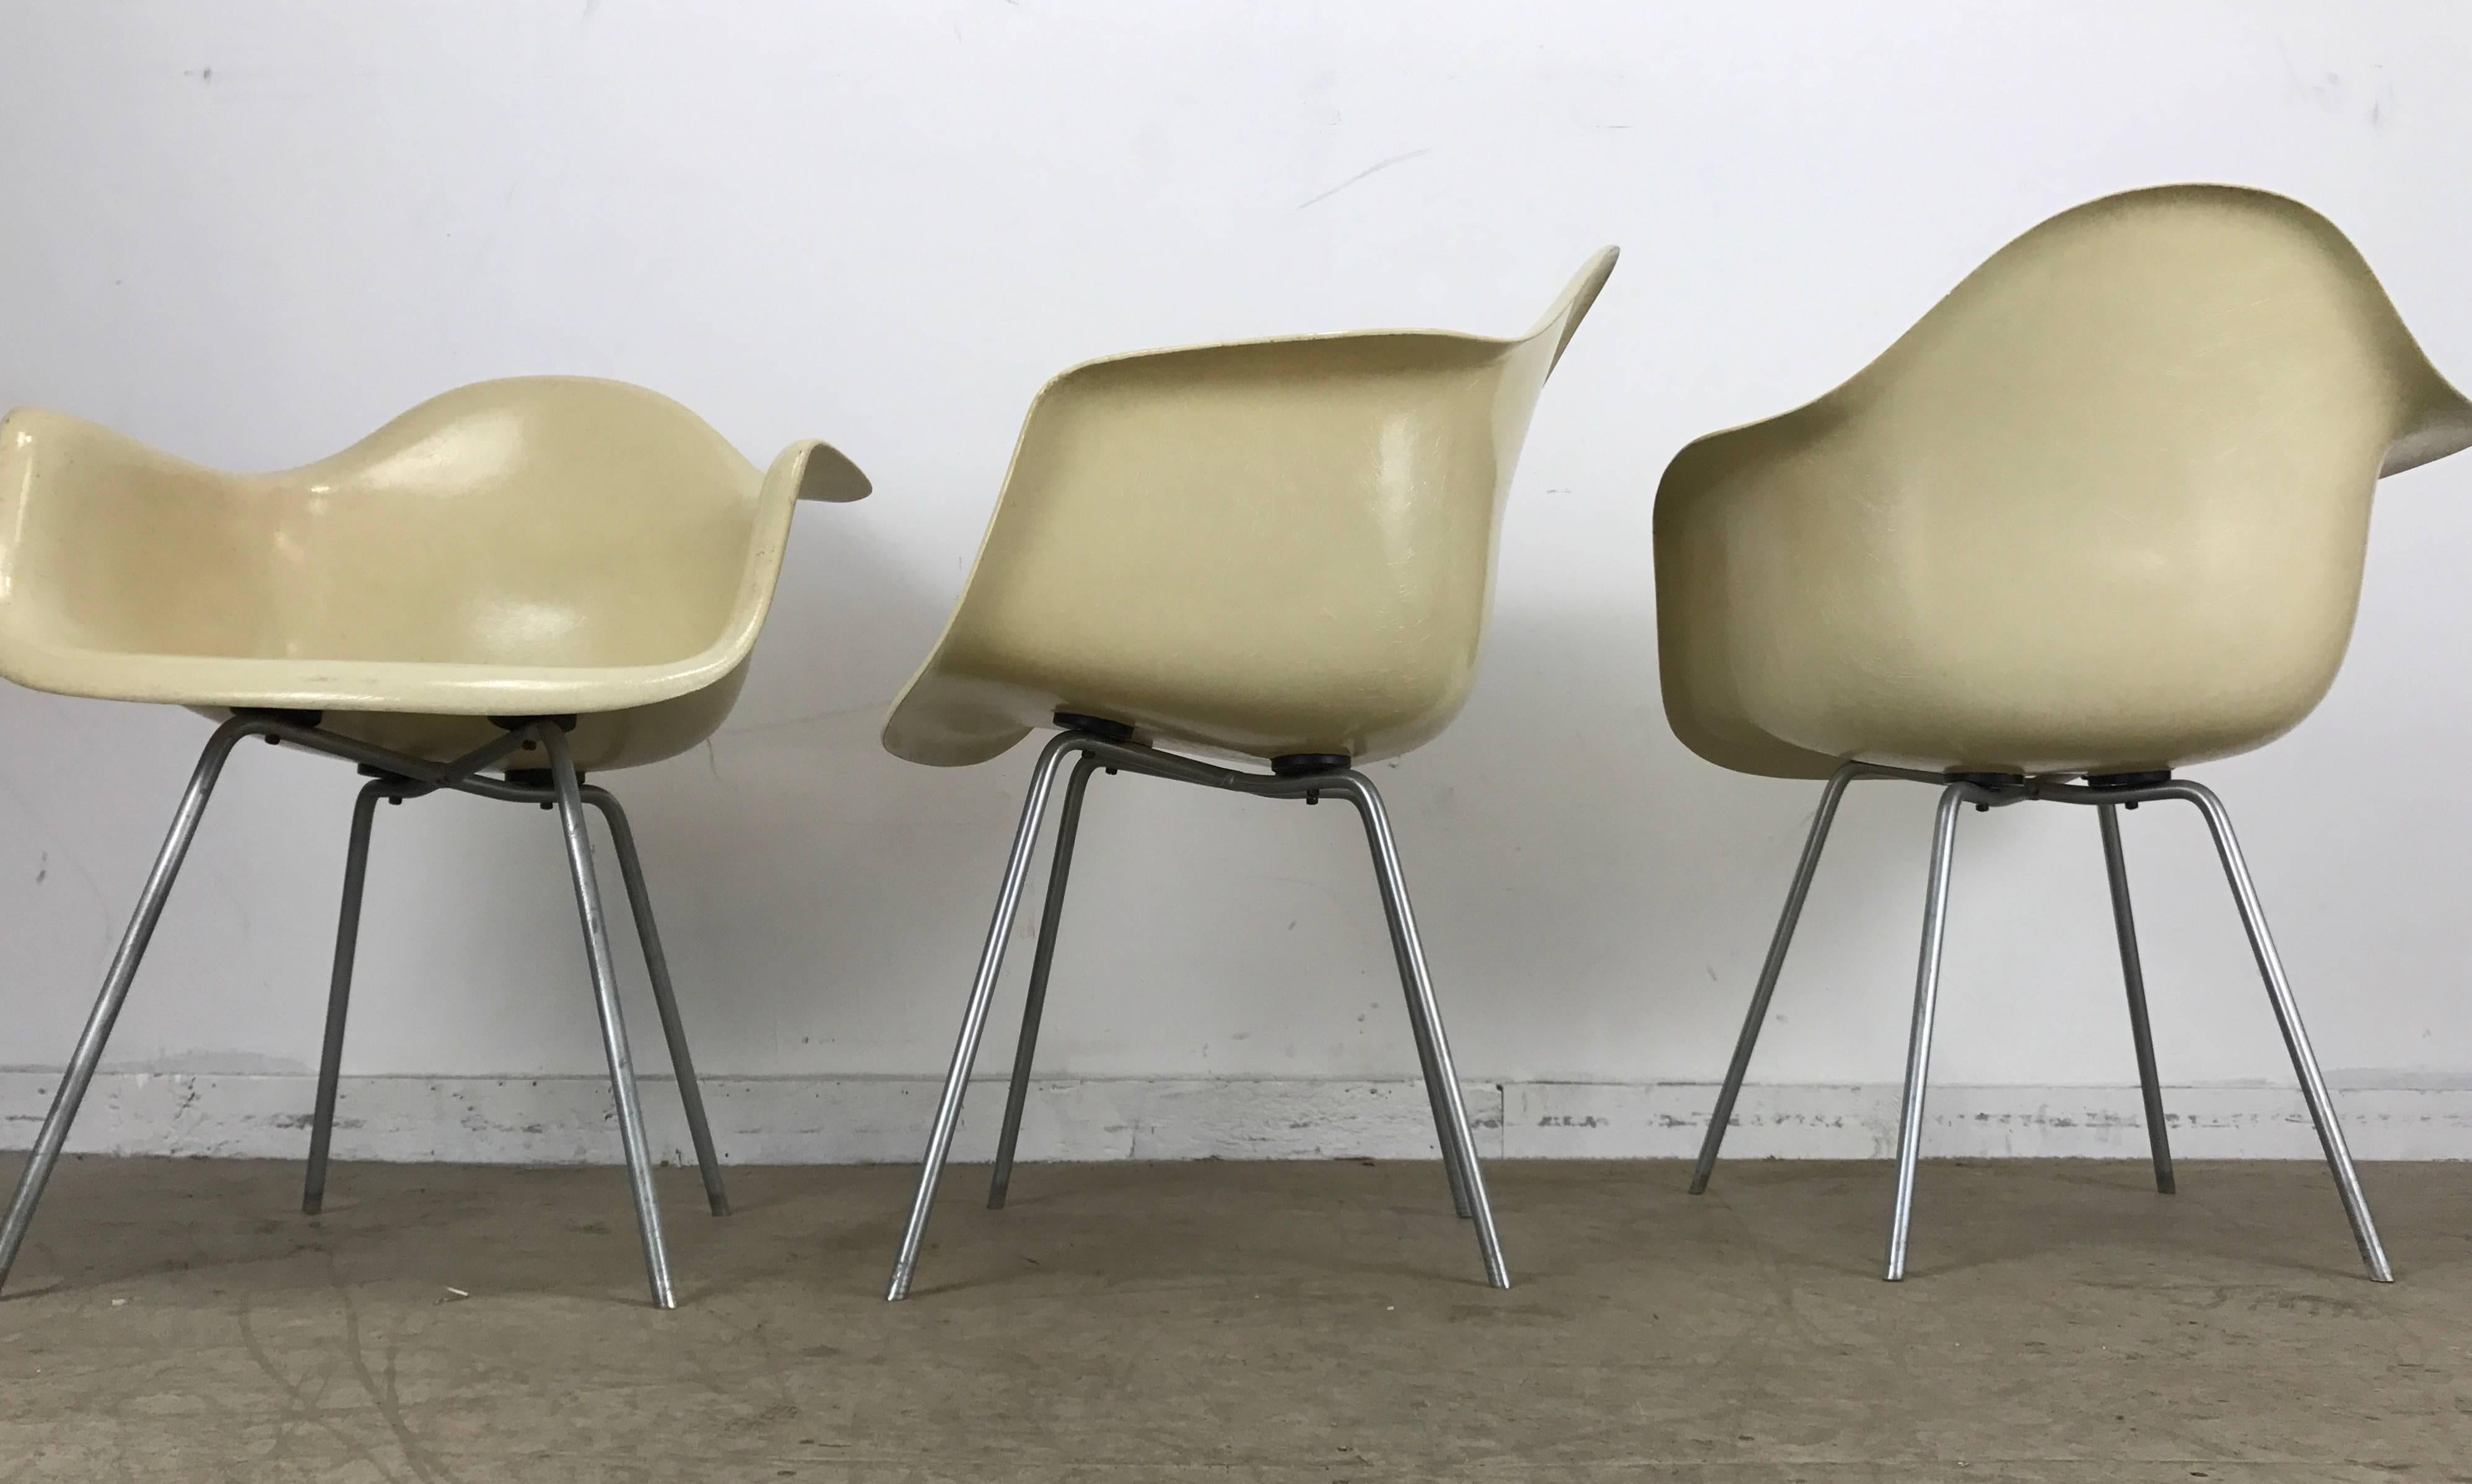 Klassische frühen 1950er Jahre Modernist Charles und Ray Eames Arm Shell Stühle D A X. (Esstisch Höhe Armlehnstuhl mit X Basis) atemberaubende off-weißem Fiberglas, frühe Zink X Basis, große Kuppeln der Stille Stoßdämpfer montiert, selten gesehen